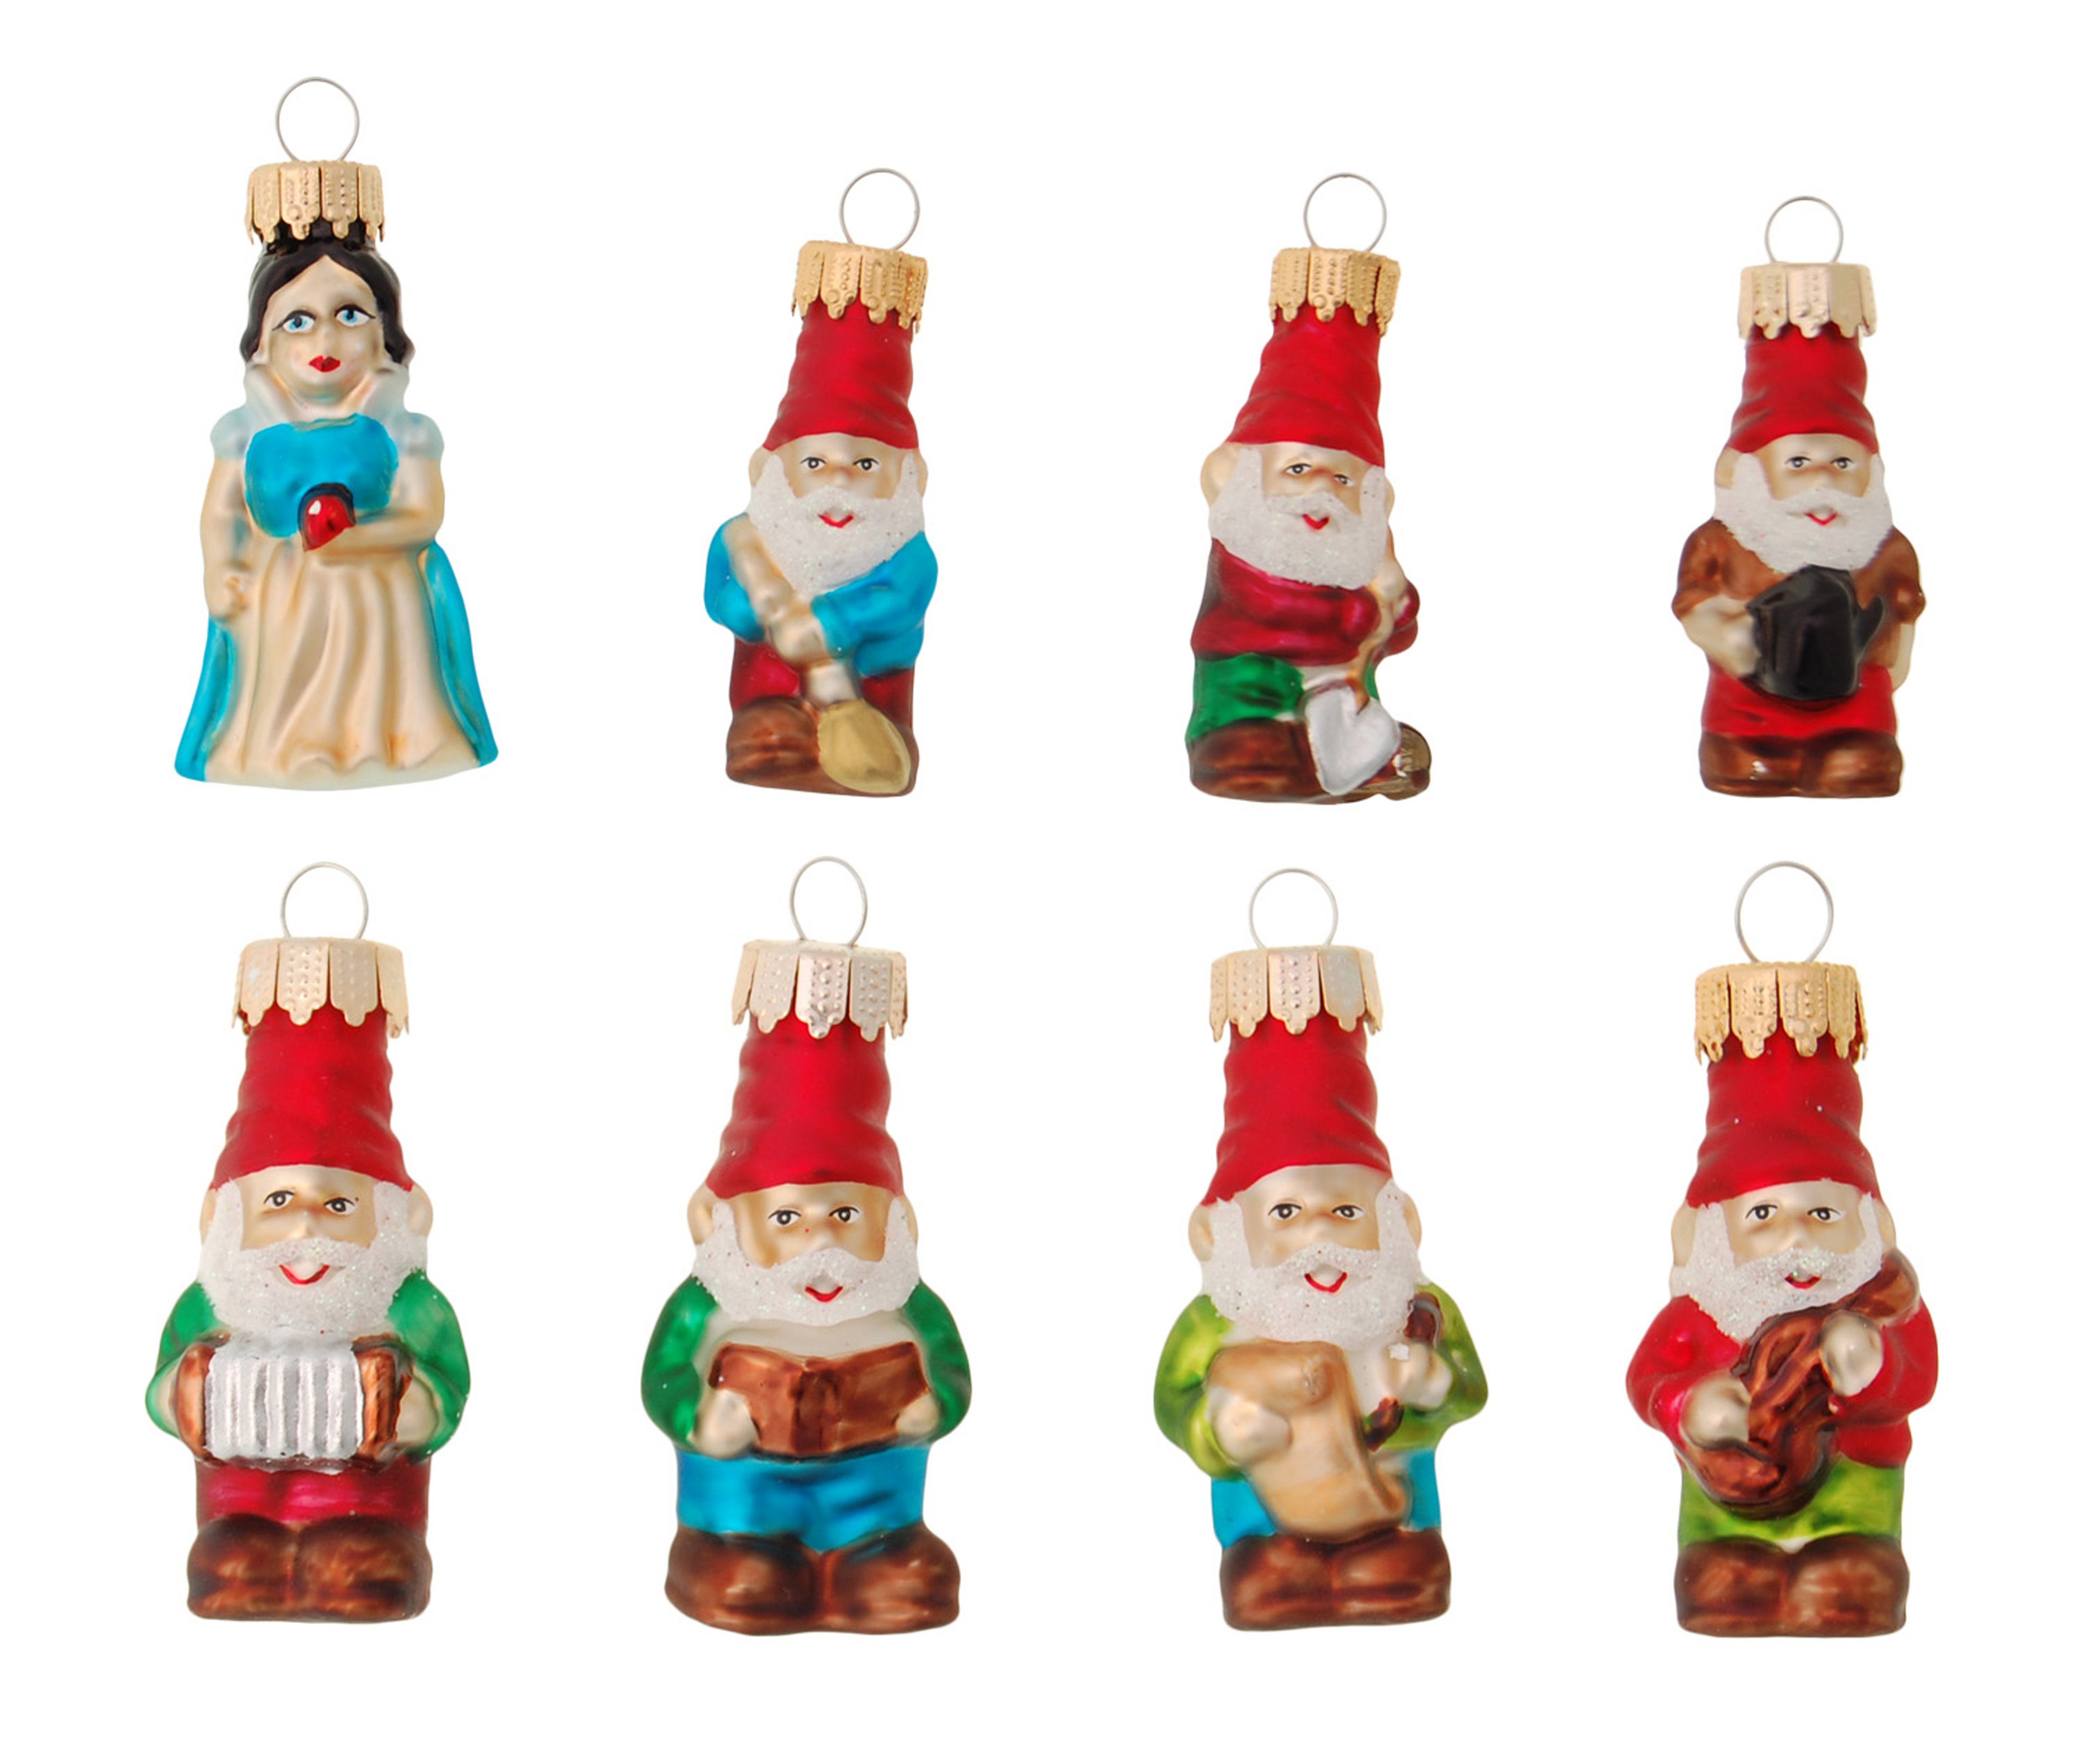 Krebs Glas Lauscha Christbaumschmuck Multicolor 7cm Mini Märchenfiguren, Schneewittchen und die 7 Zwerge